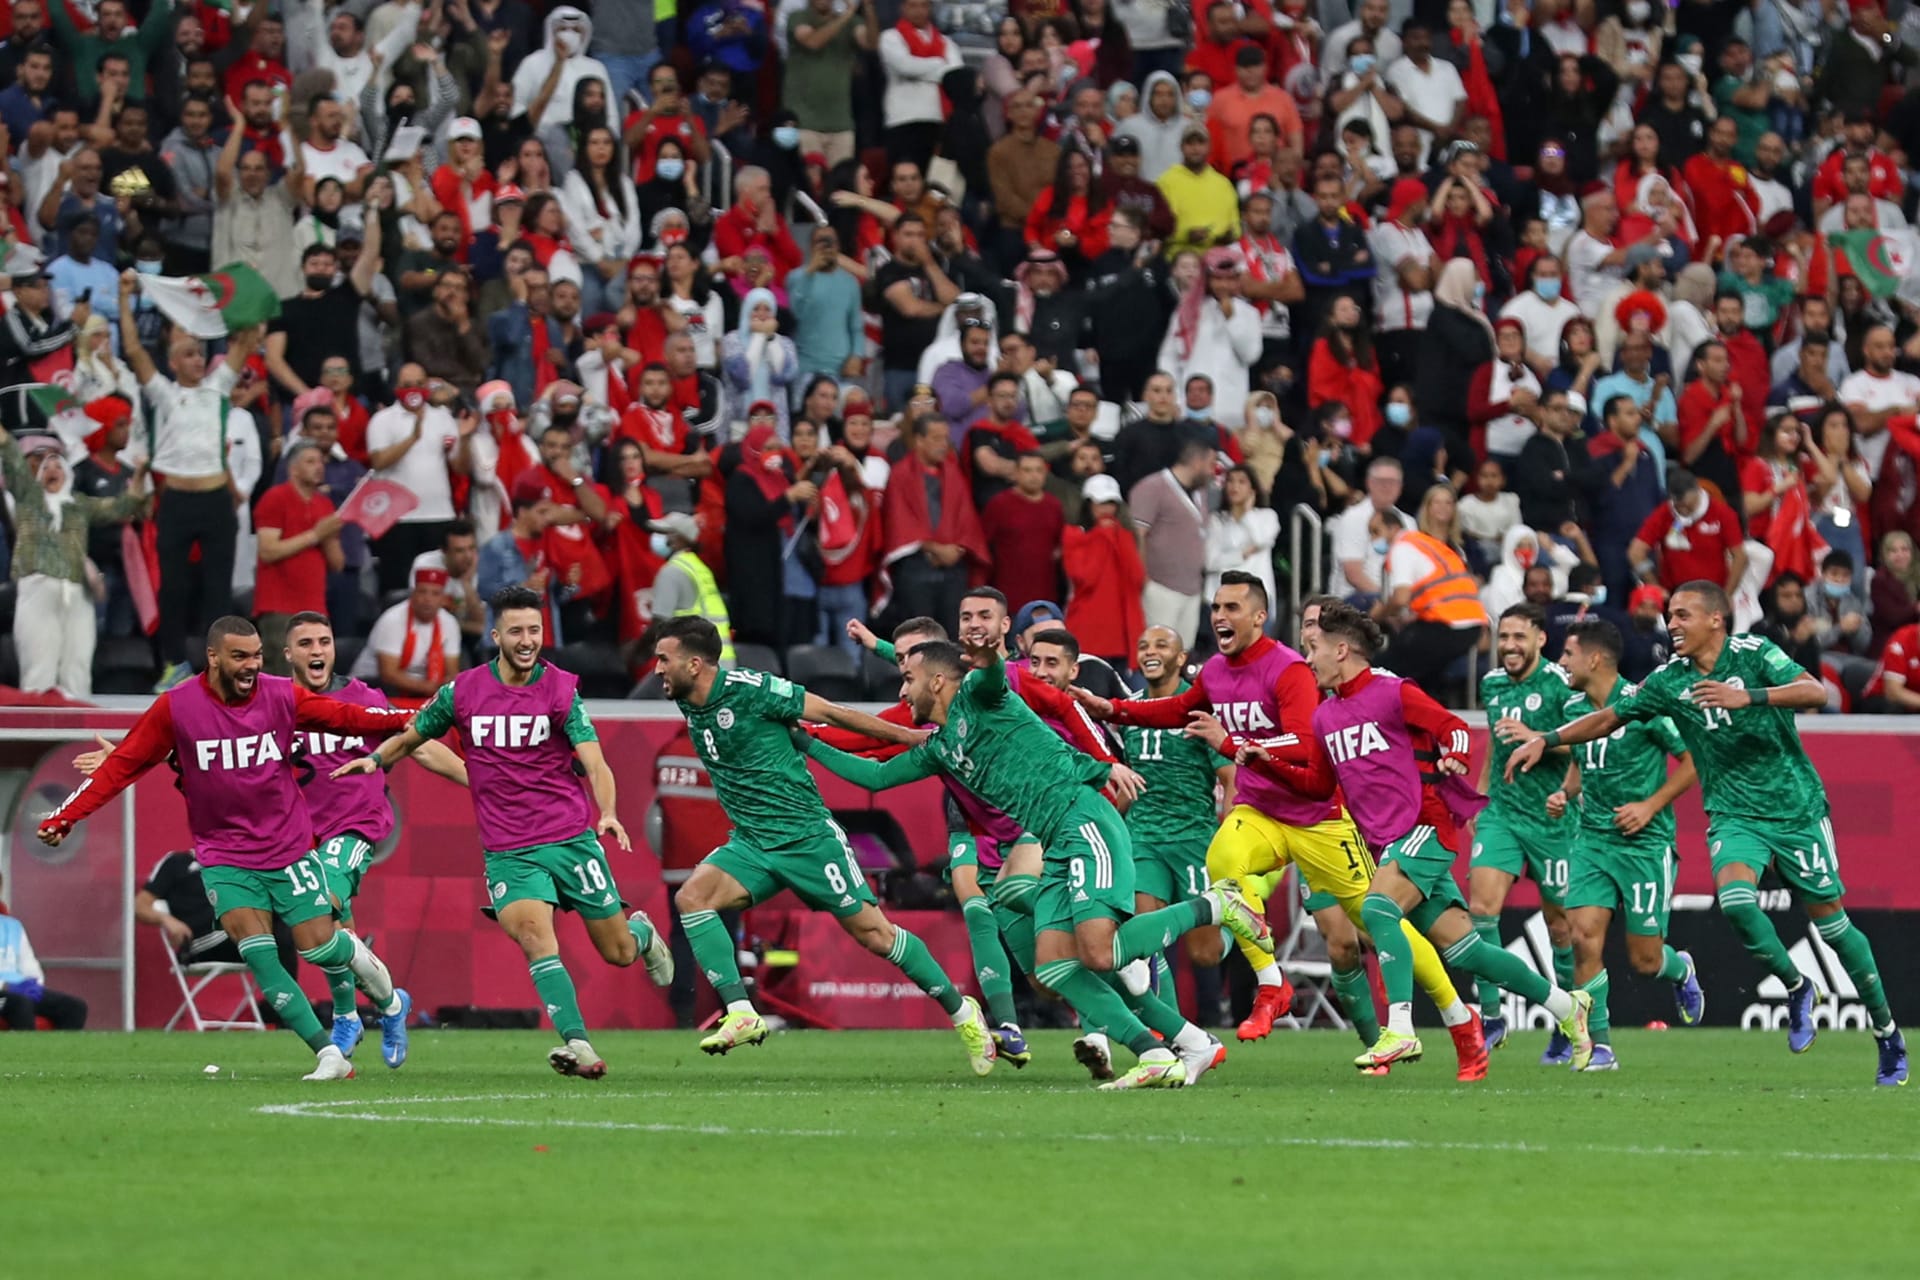 الجزائر بطلة كأس العرب للمرة الأولى في تاريخها بعد الفوز على تونس